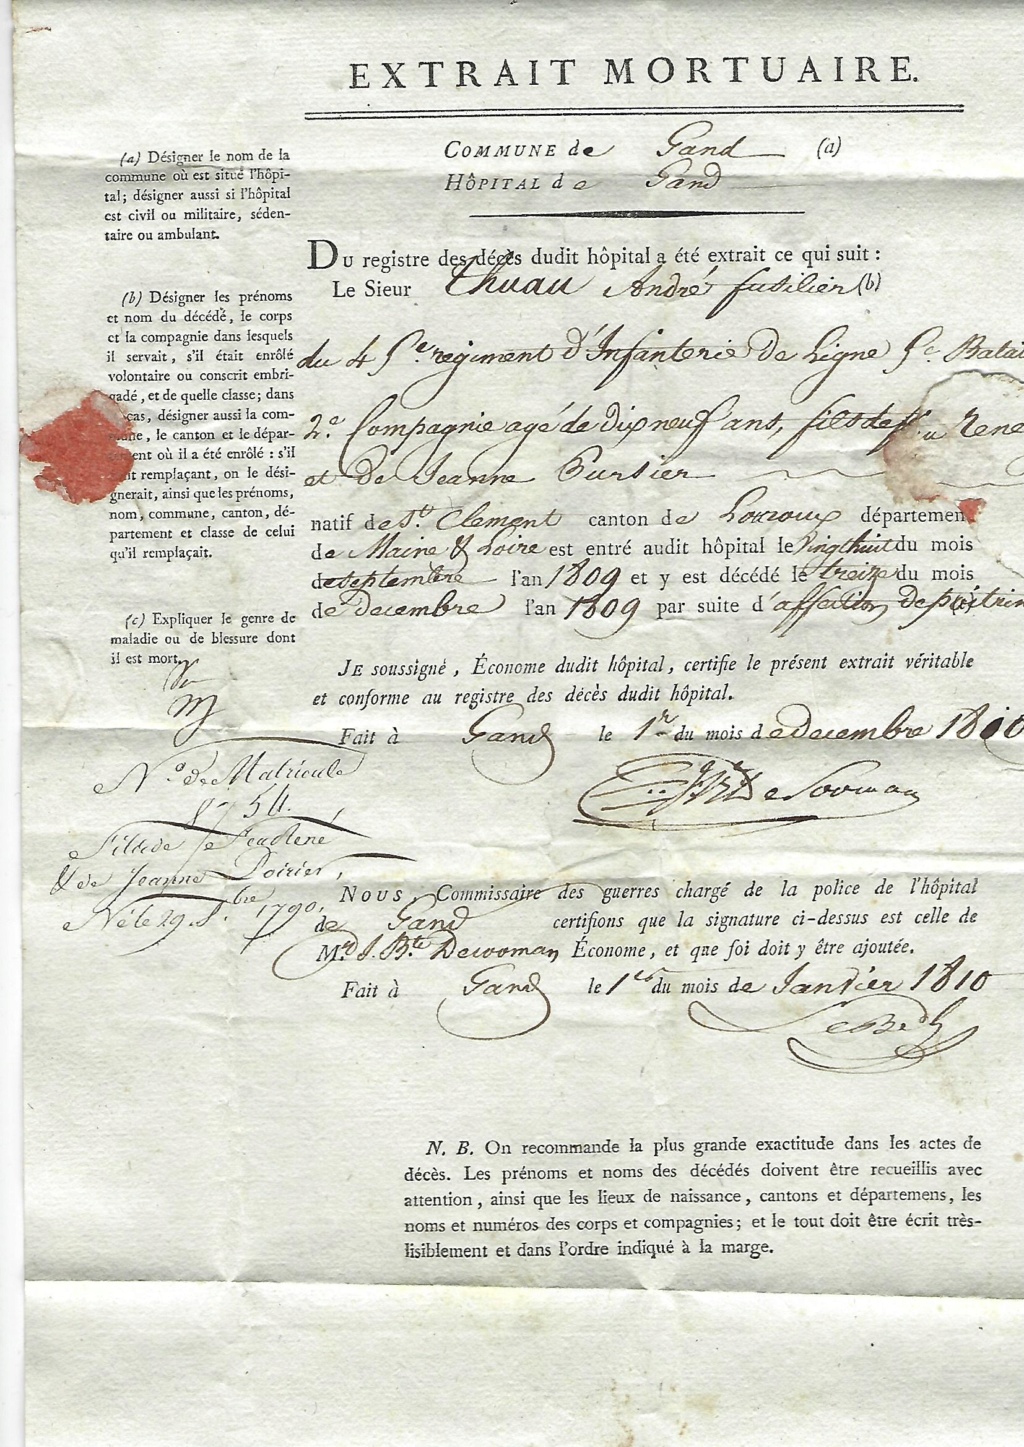 Trajet d'une lettre en 1810 entre Gnad et Angers Dzobou11